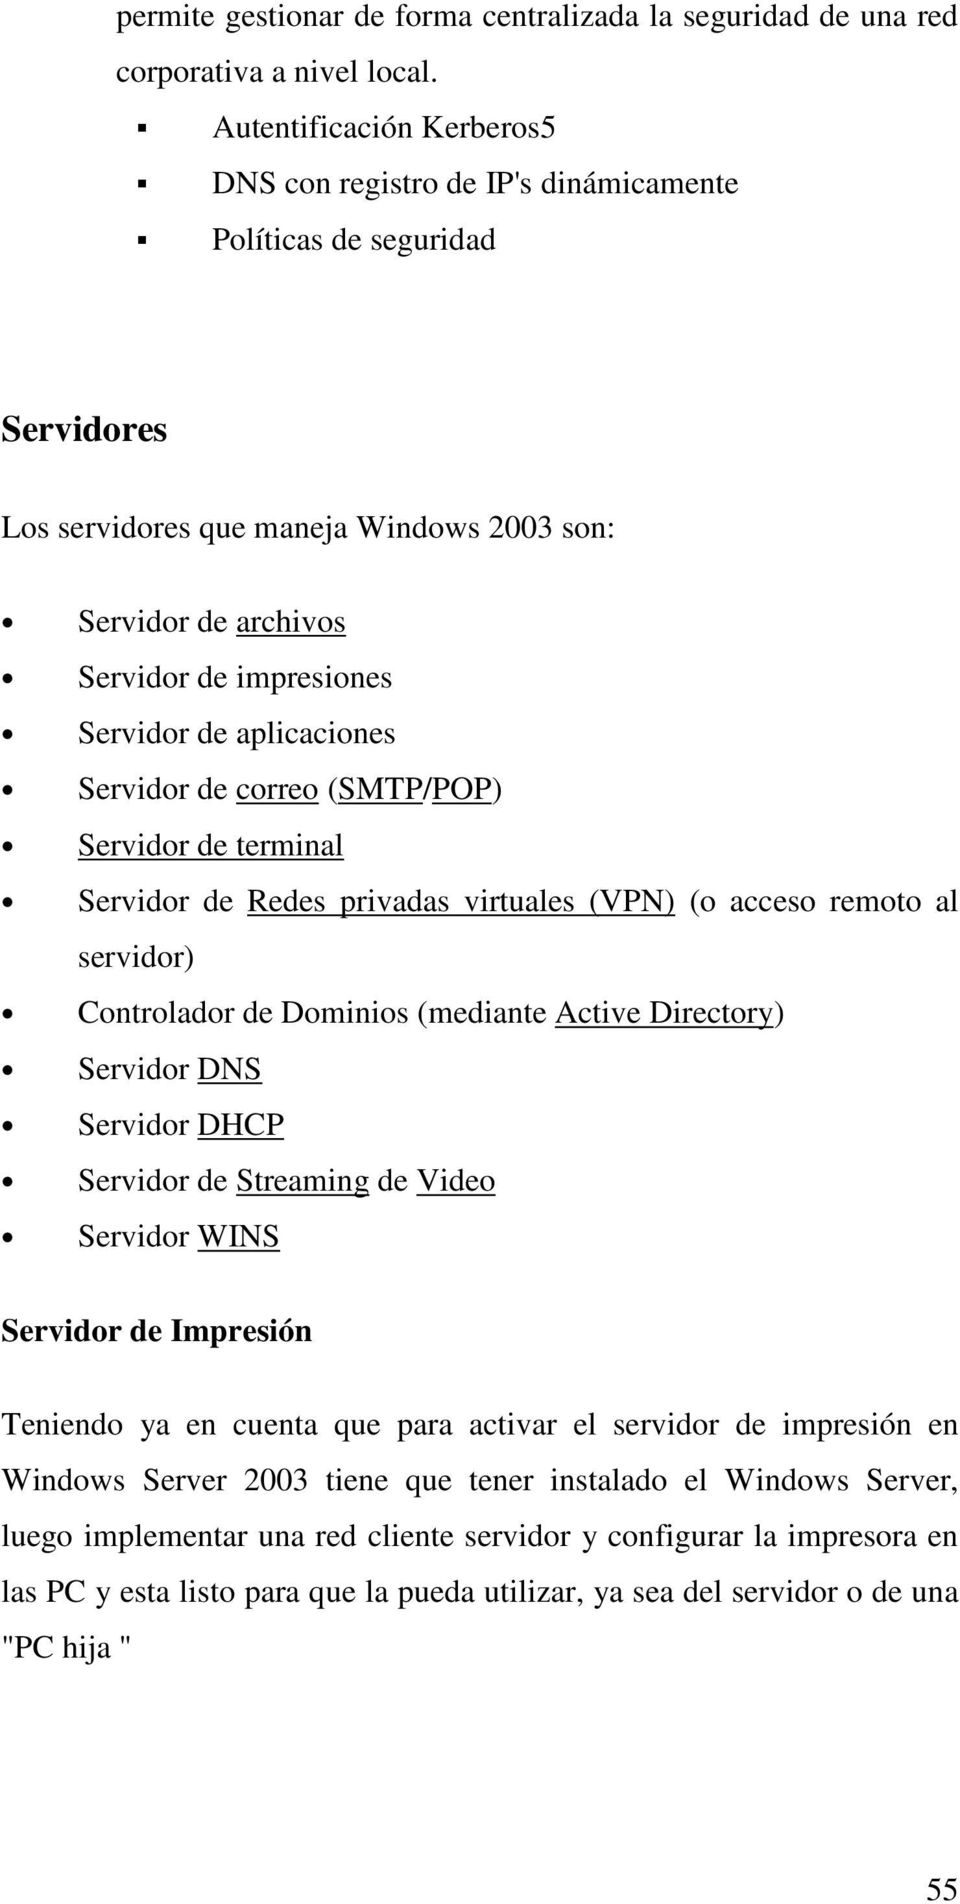 aplicaciones Servidor de correo (SMTP/POP) Servidor de terminal Servidor de Redes privadas virtuales (VPN) (o acceso remoto al servidor) Controlador de Dominios (mediante Active Directory) Servidor